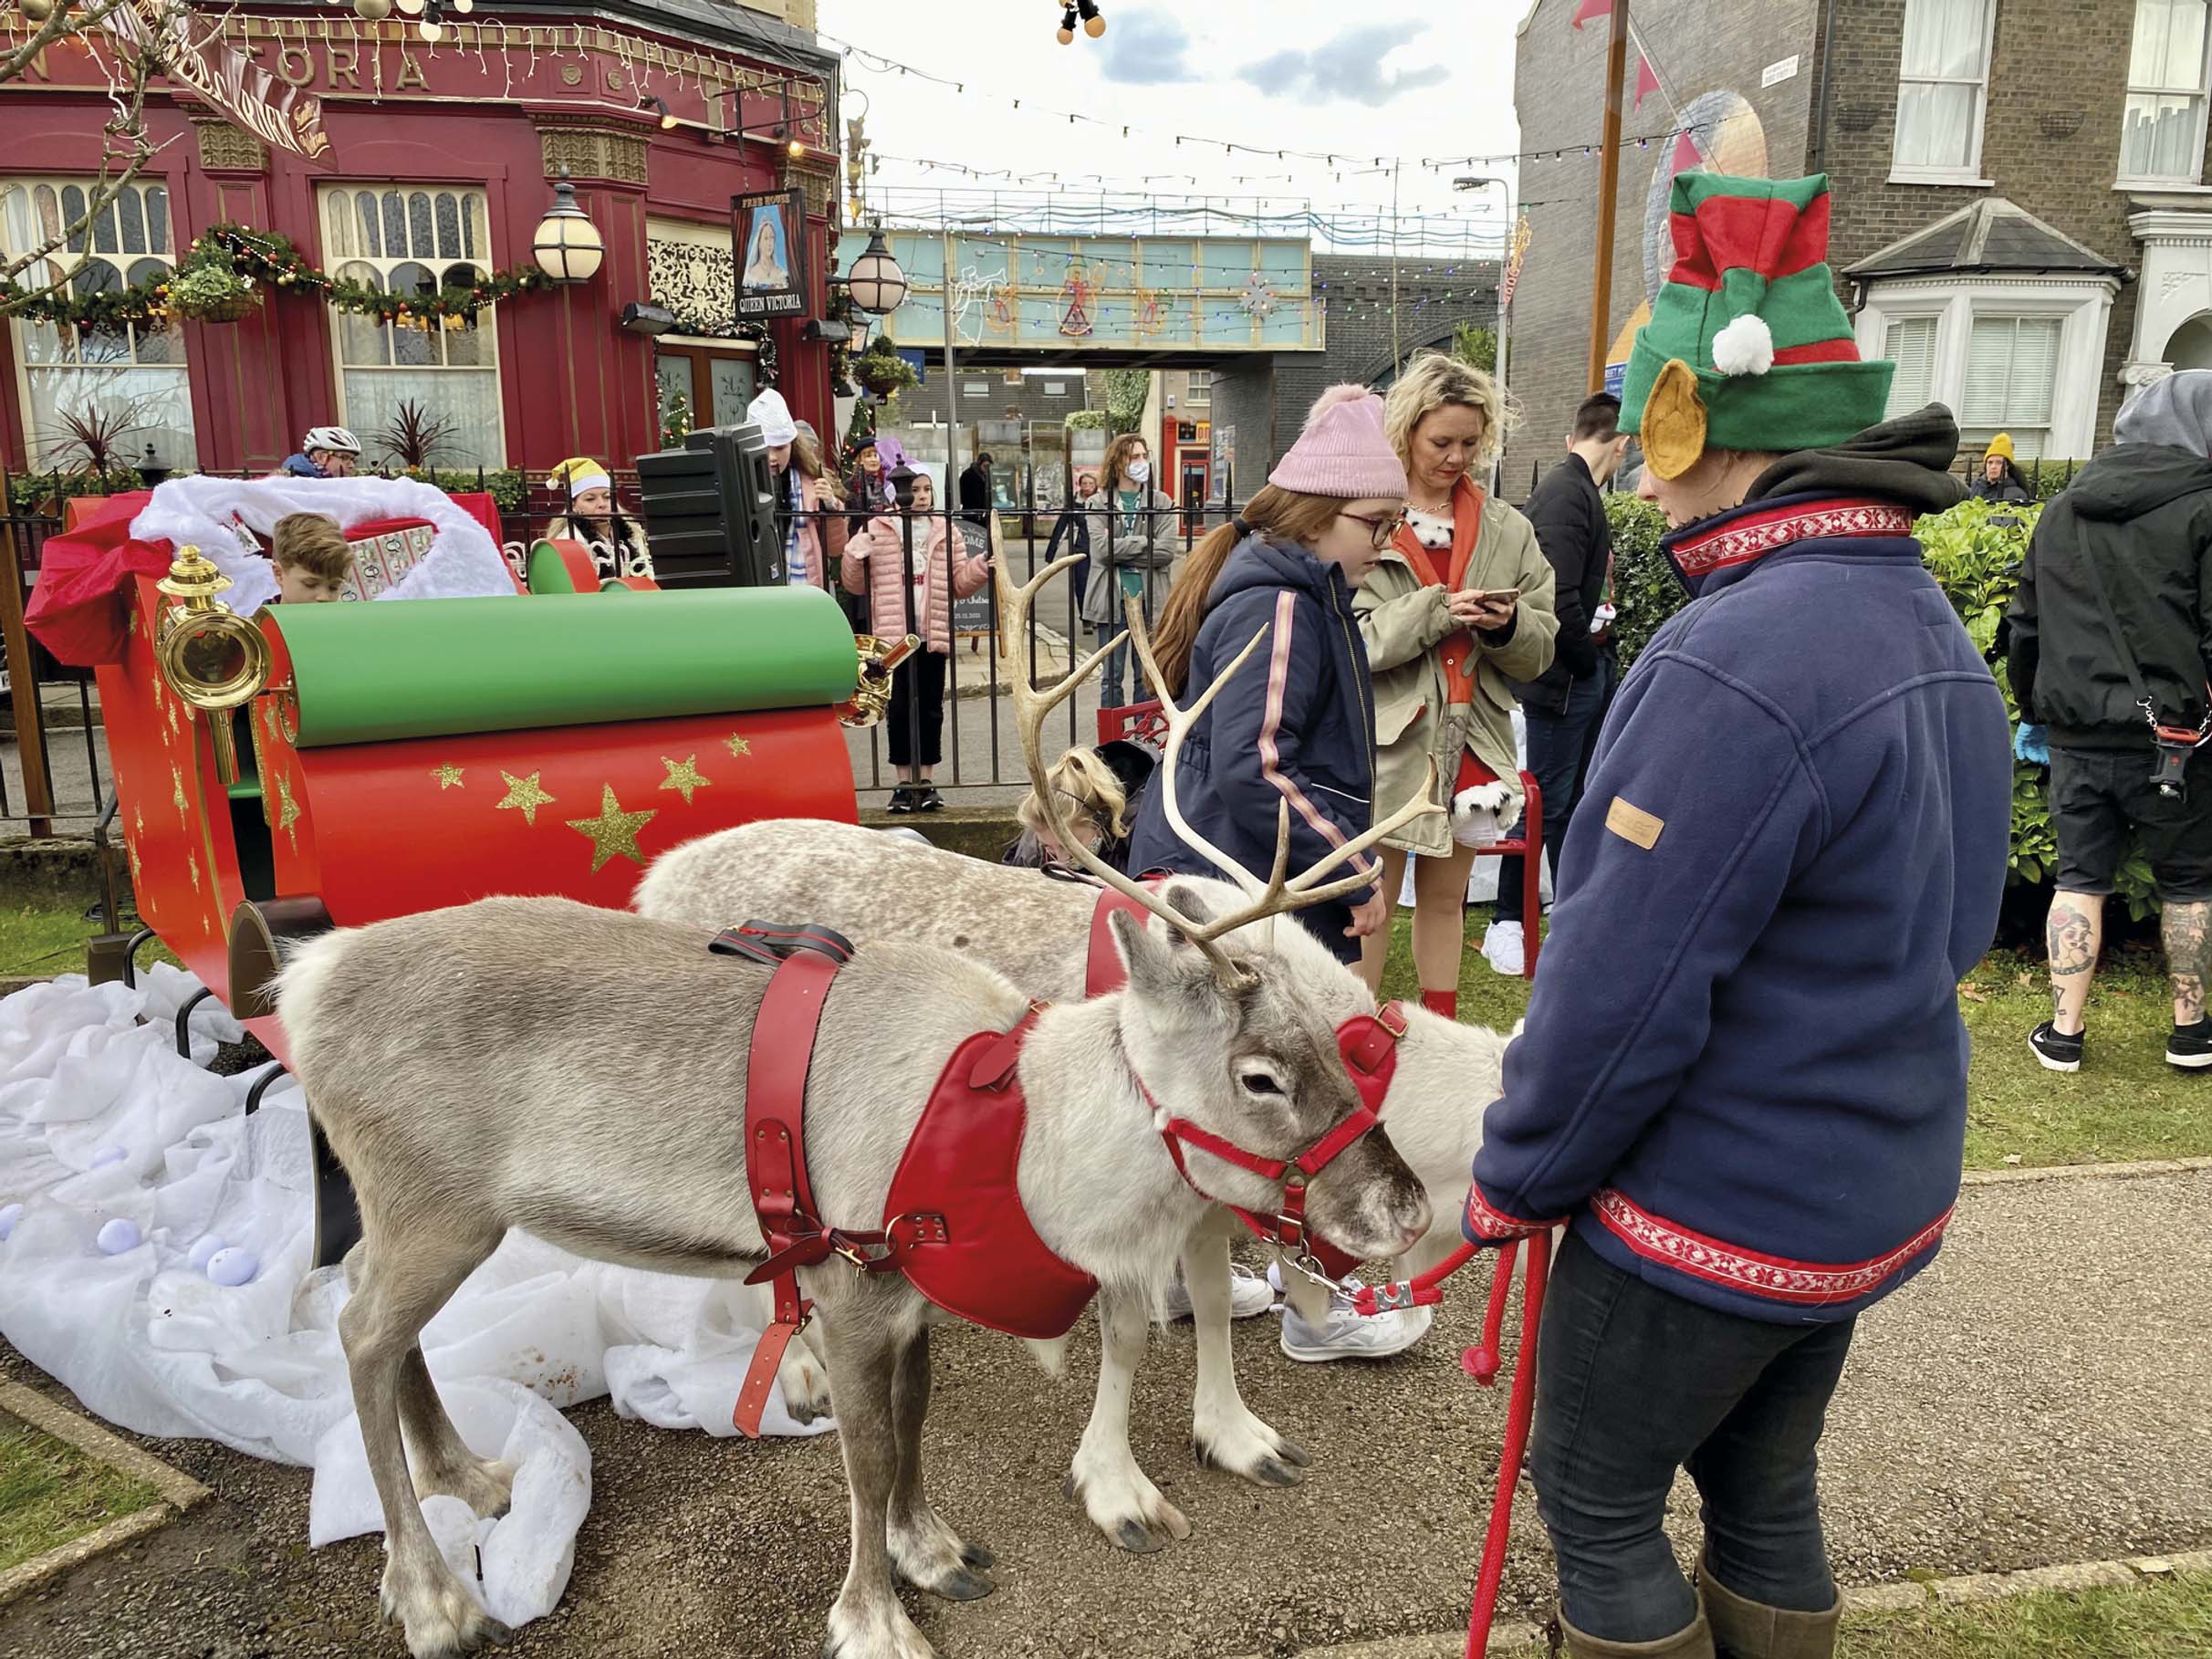 Nick Dean's Woodbine Reindeer... seen here in EastEnders' Albert Square!